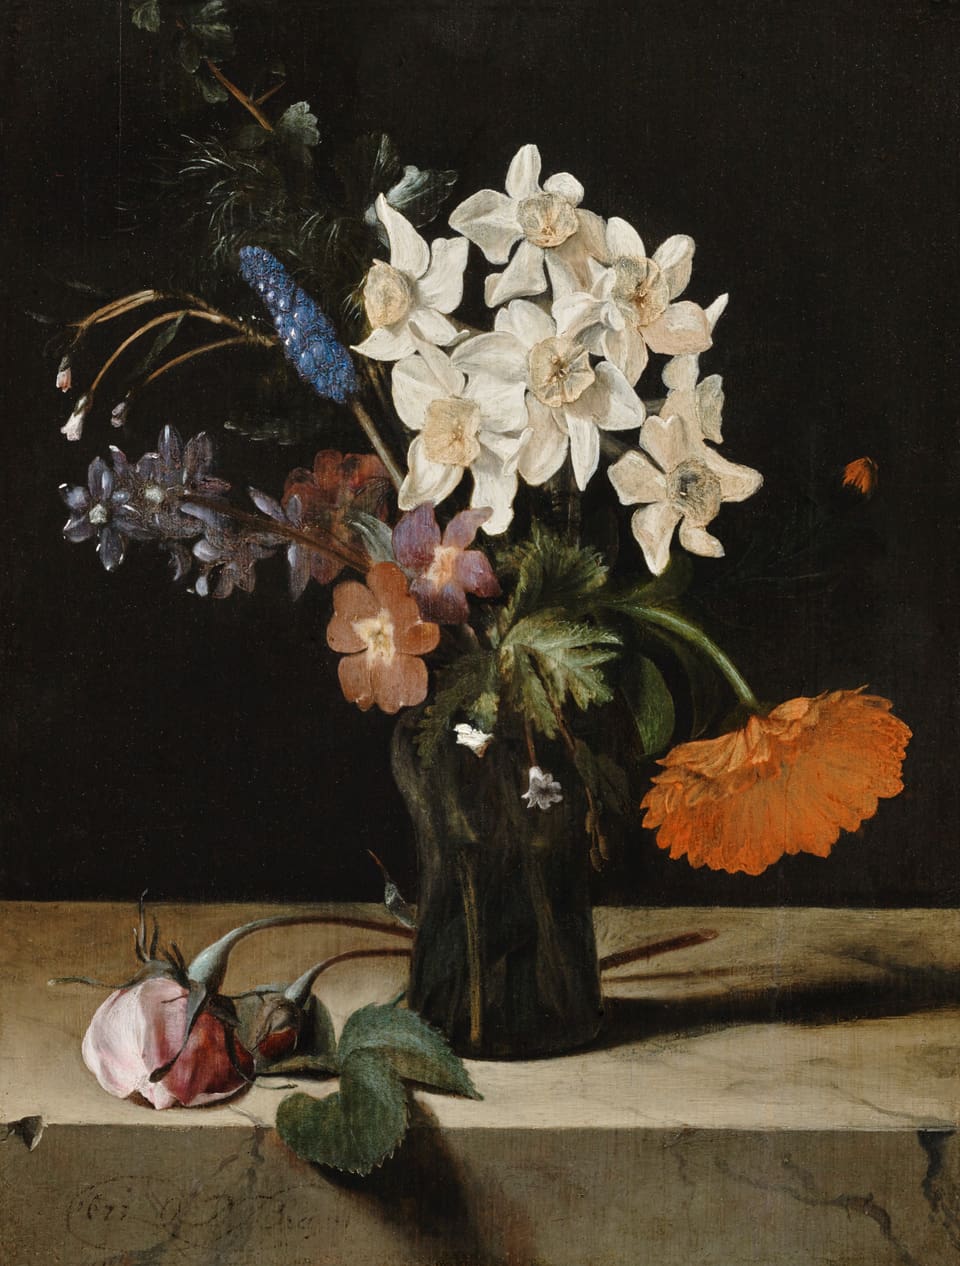 Gemälde mit dem Titel: Narzissen und andere Blumen in Glasvase auf der Marmorplatte